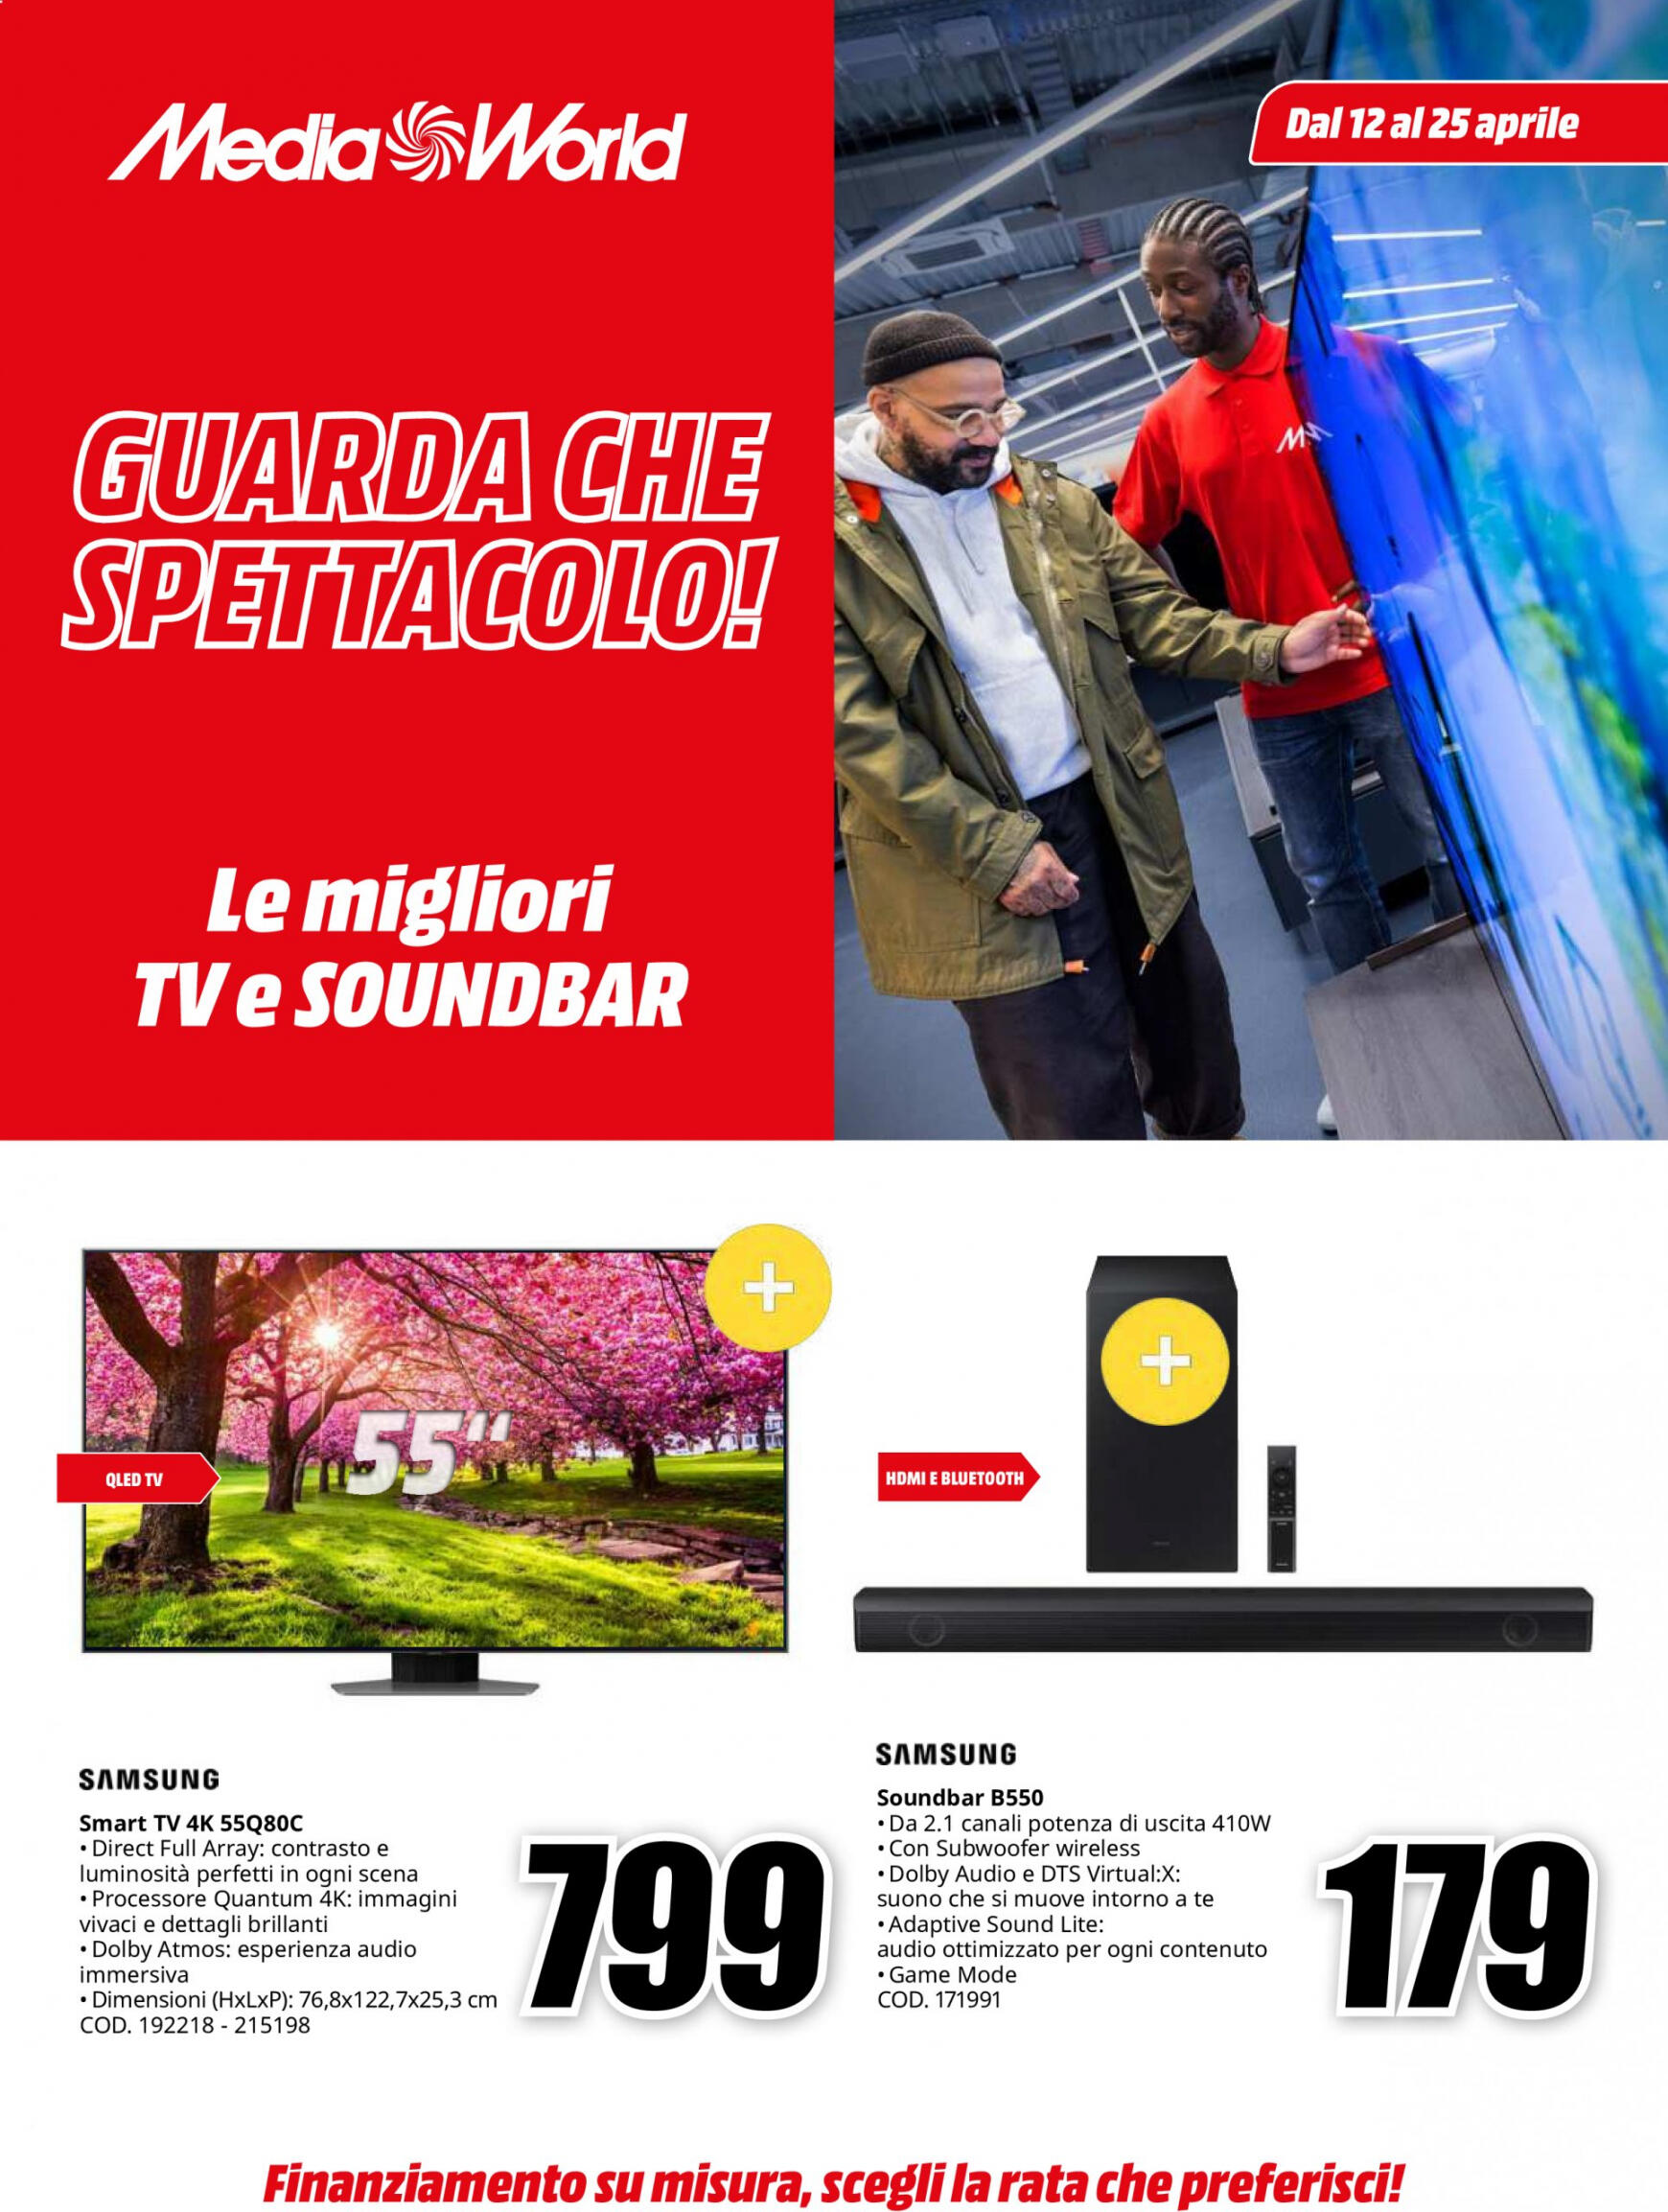 mediaworld - Nuovo volantino Mediaworld 12.04. - 25.04.